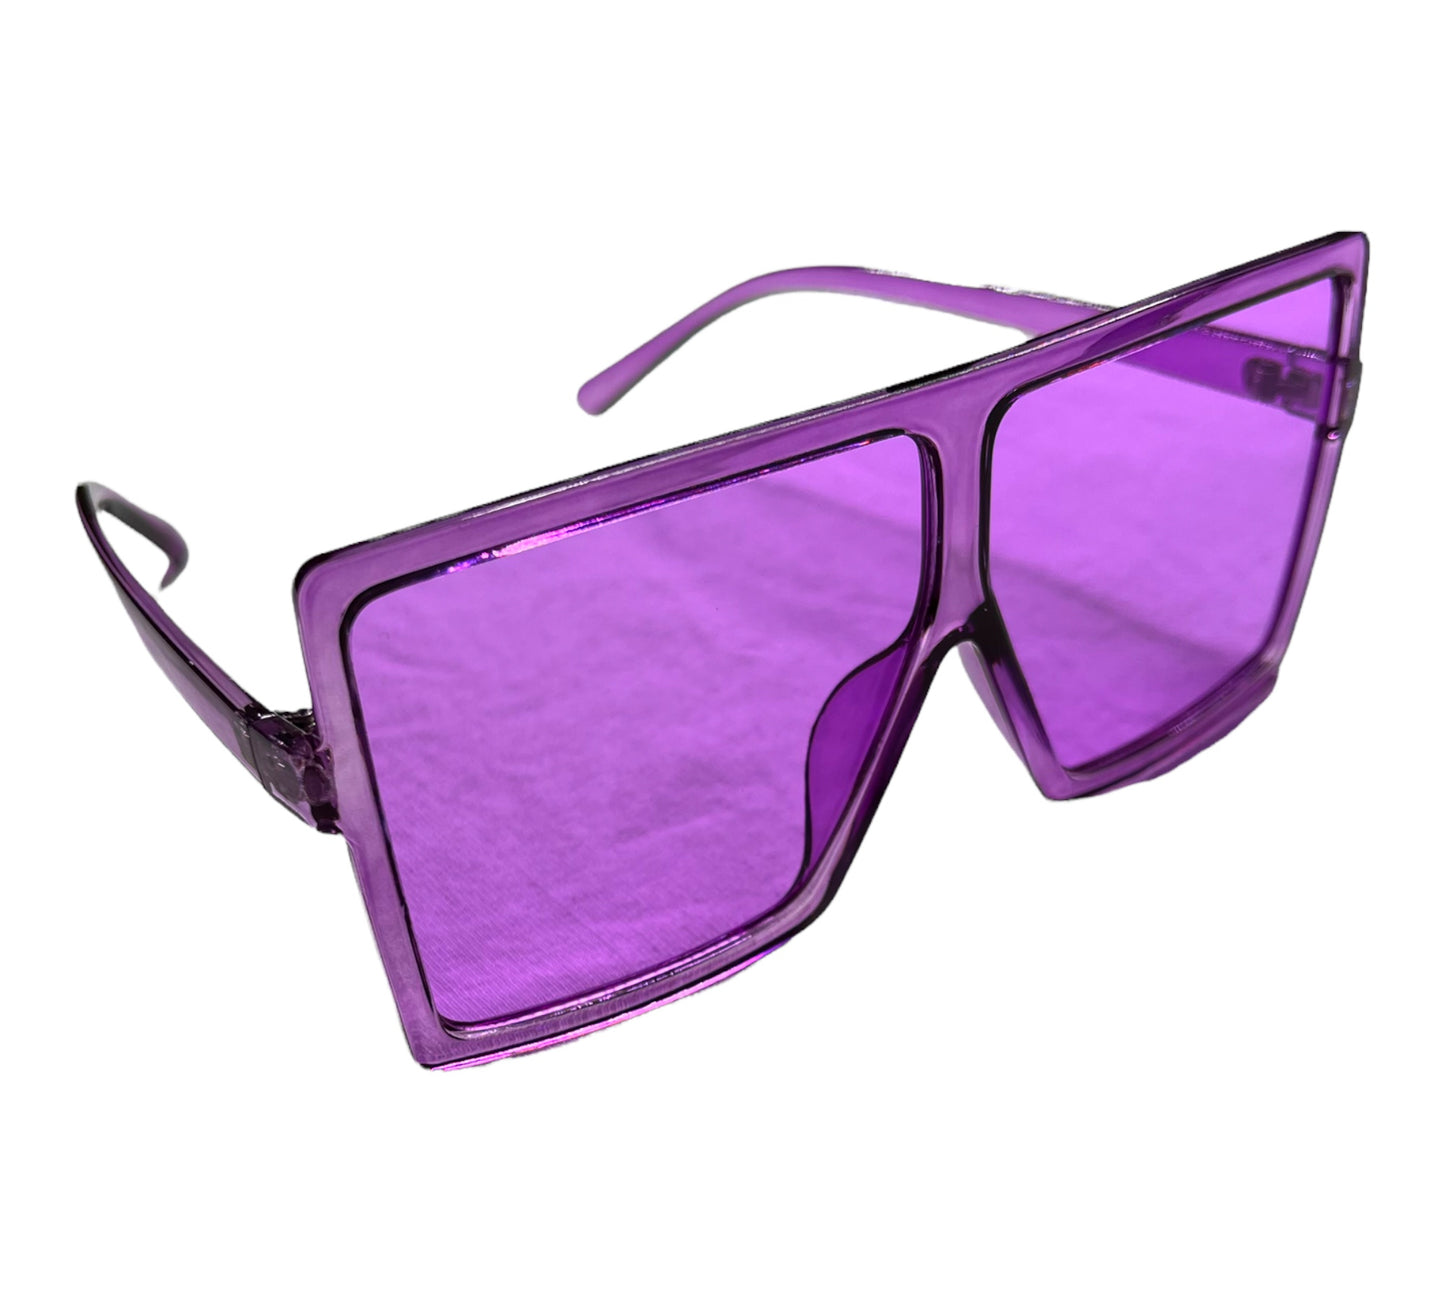 G-n-G Sun Glasses (multiple colors)